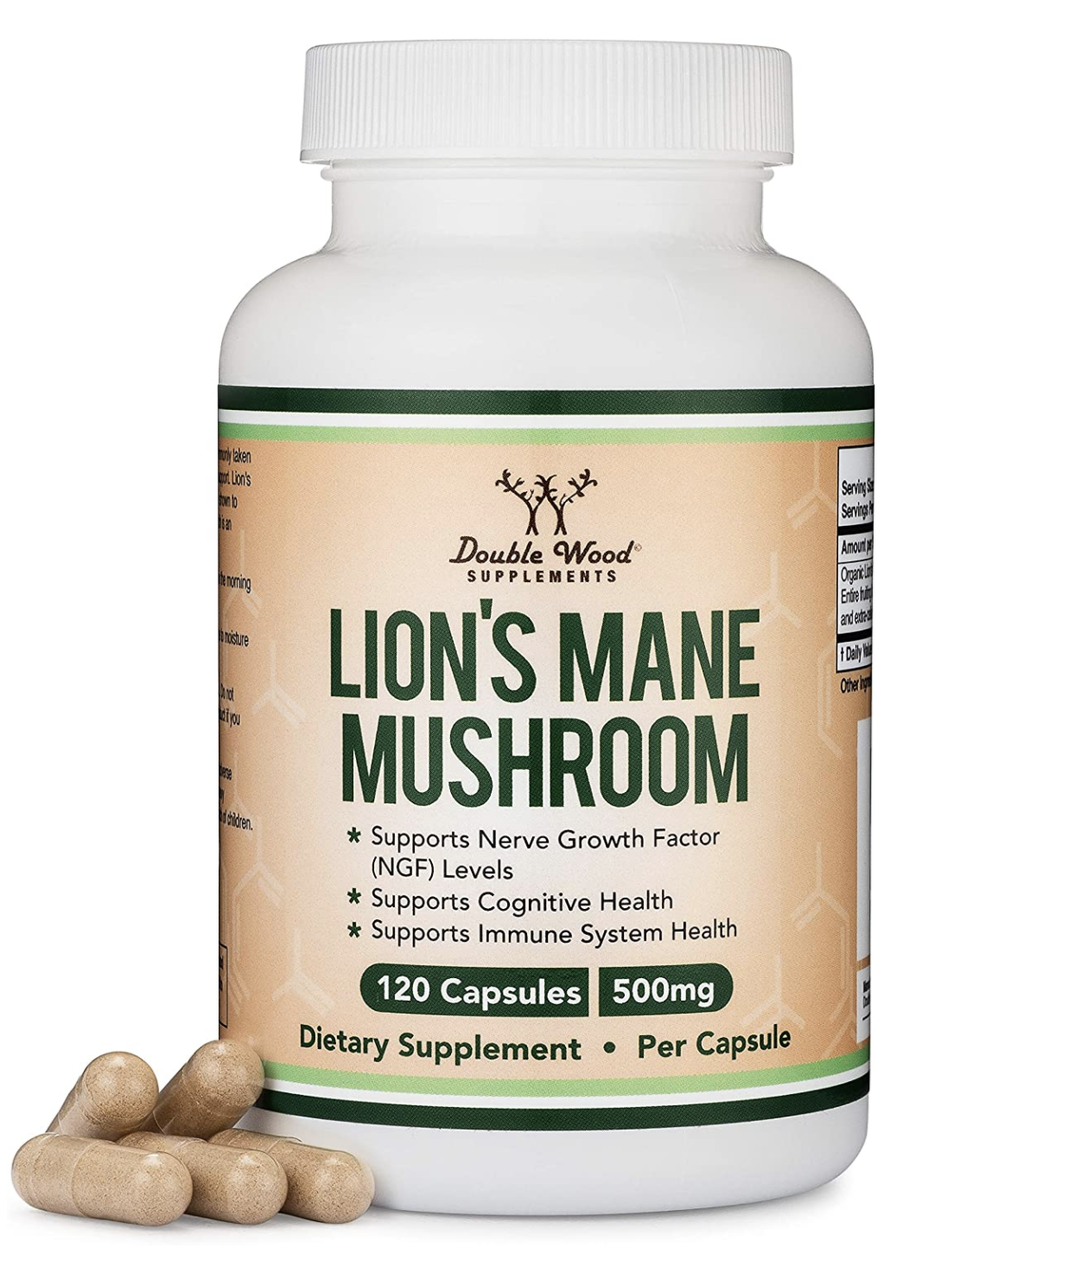 Double Wood Lion's Mane Mushroom / Їжовик гребінчастий для когнітивного здоров'я 120 капсул